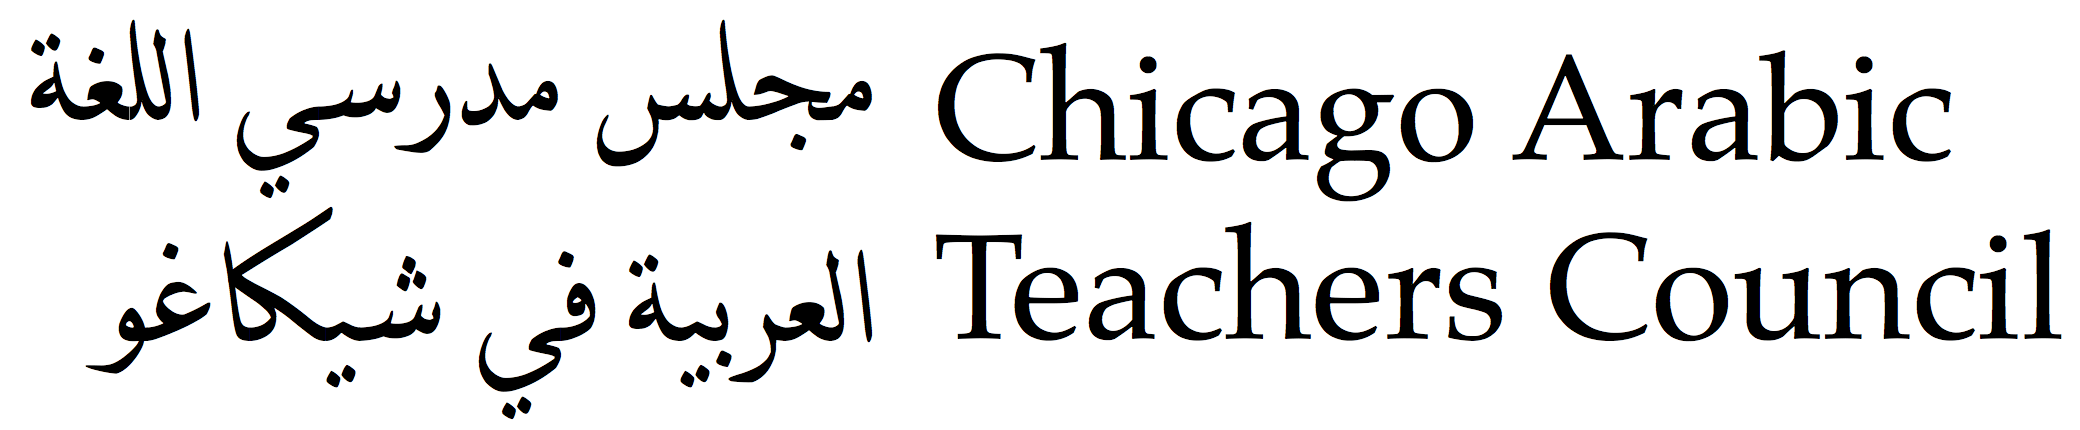 Chicago Arabic Teachers Council